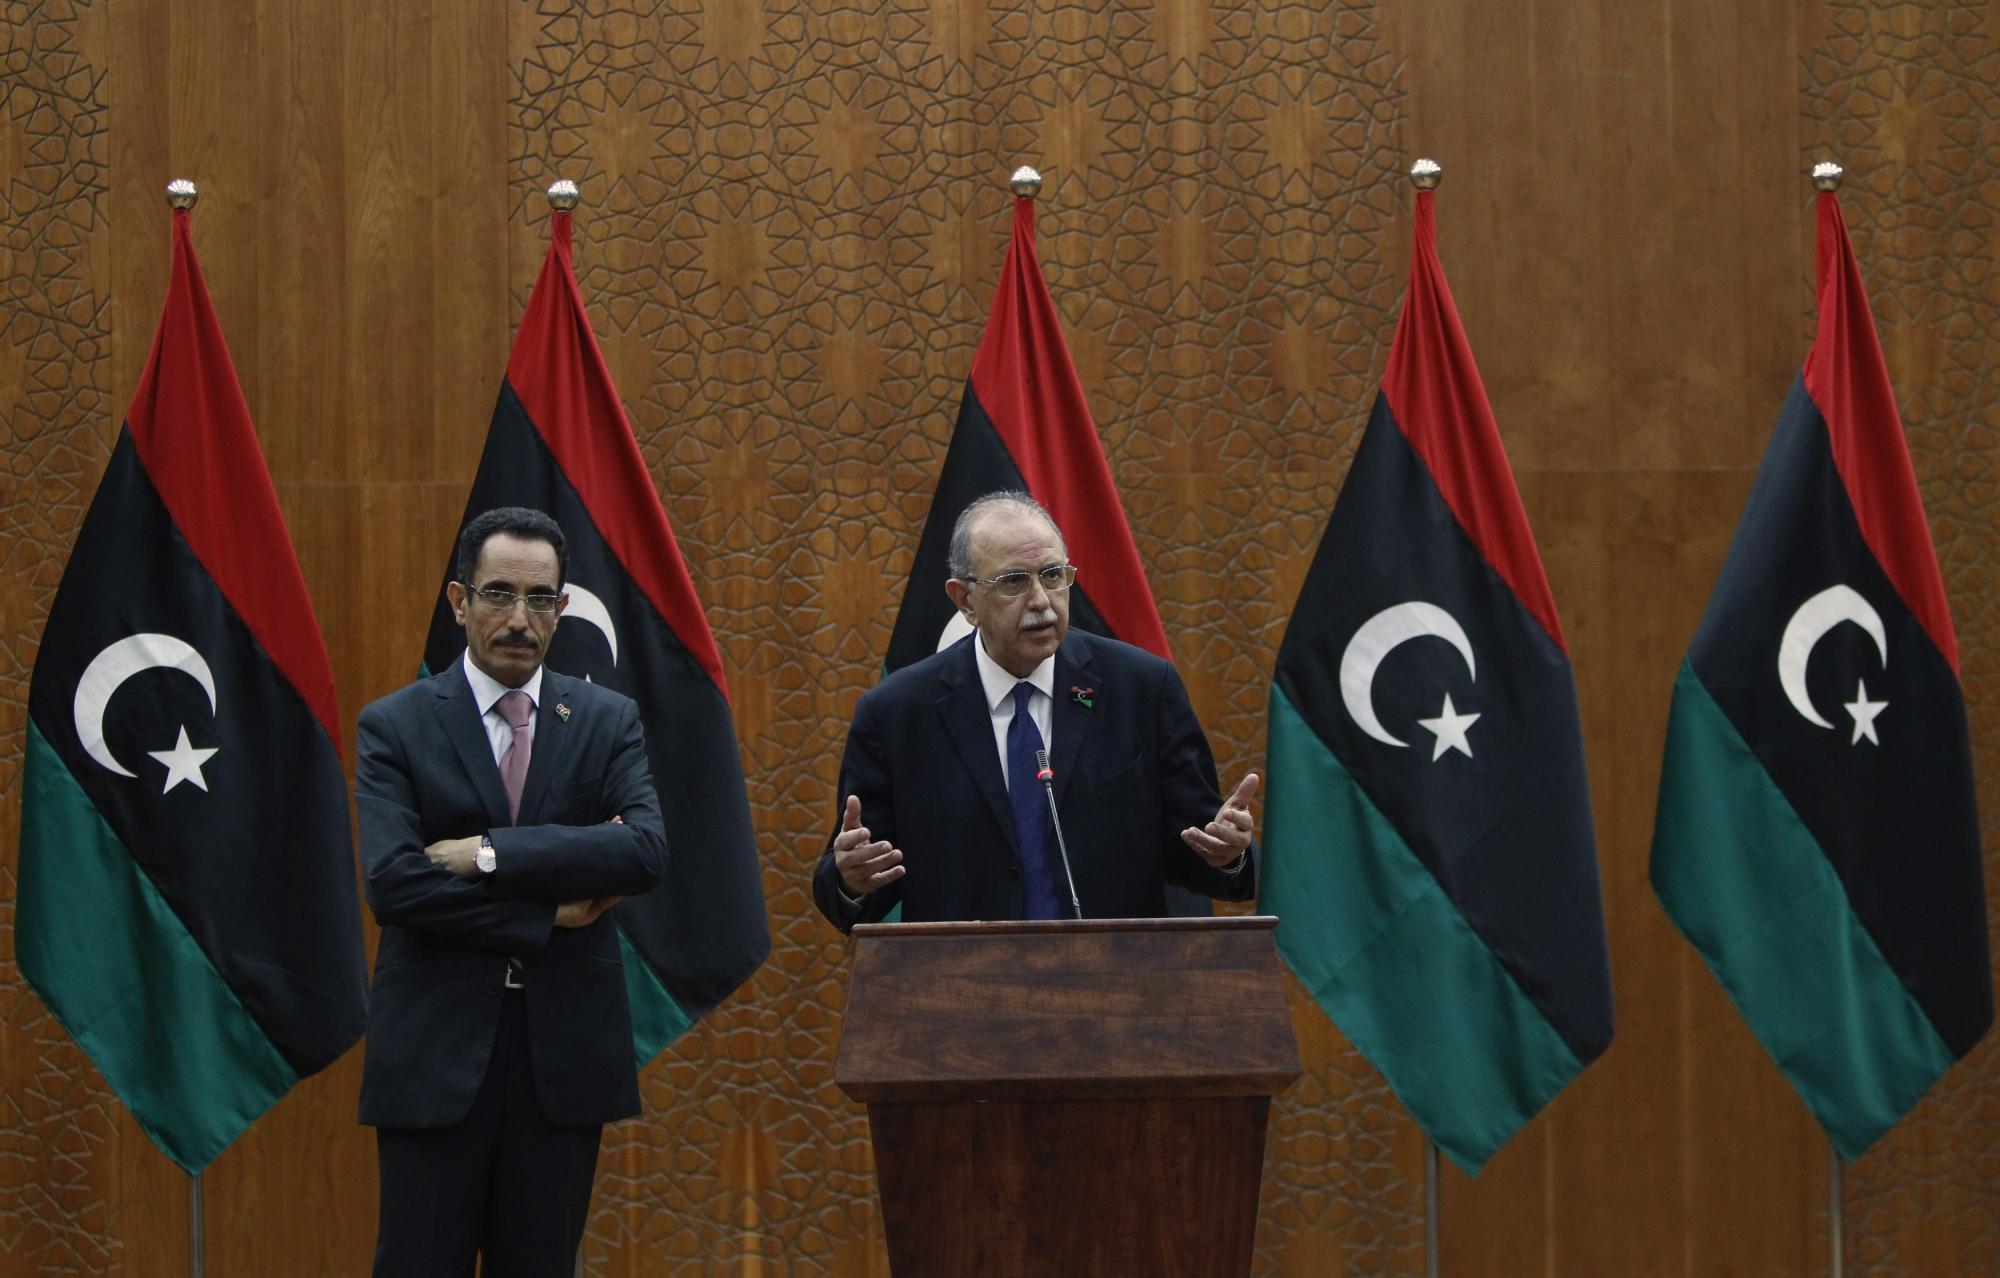 利比亚成立“过渡政府” 赛义夫被向导出卖或于国内受审